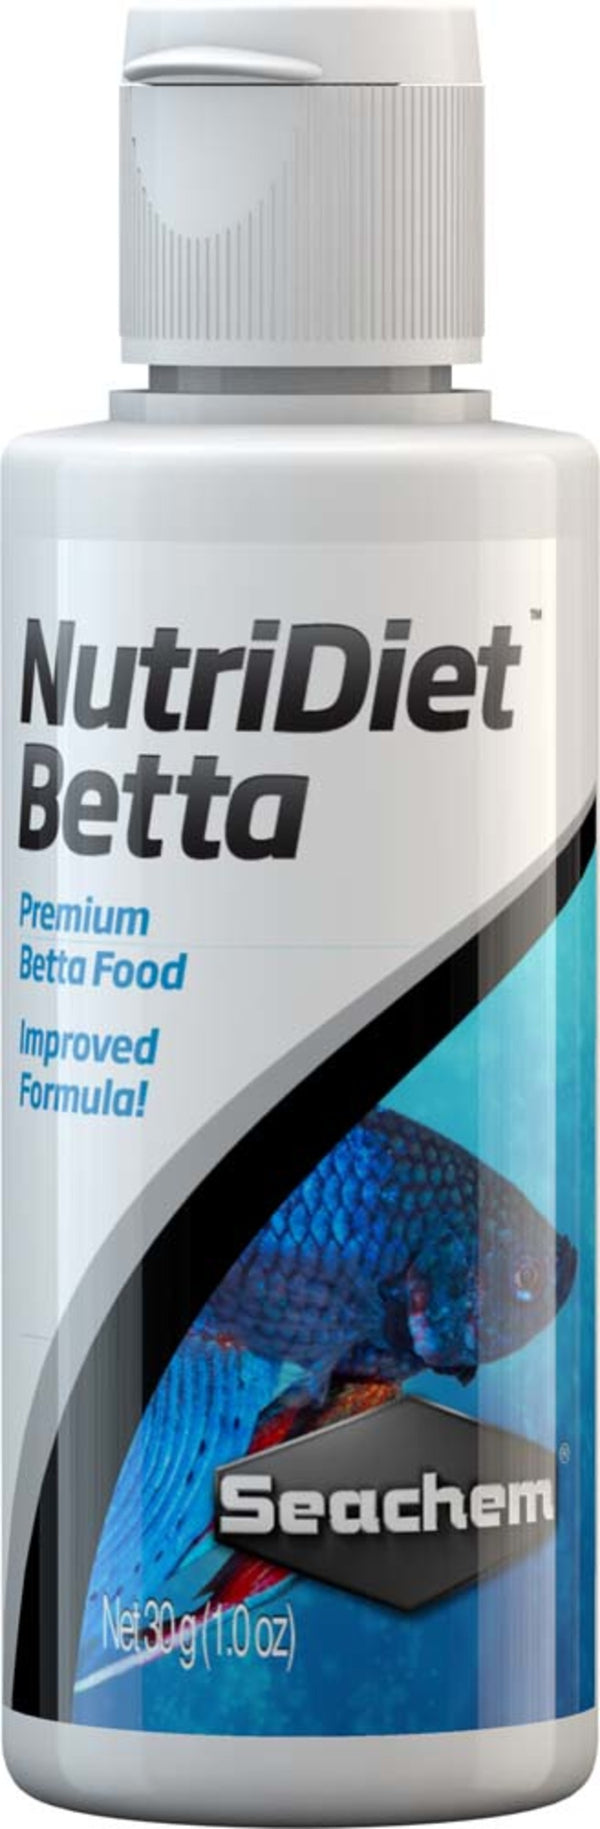 Seachem Laboratories NutriDiet Betta with Probiotics Fish Food - 1oz